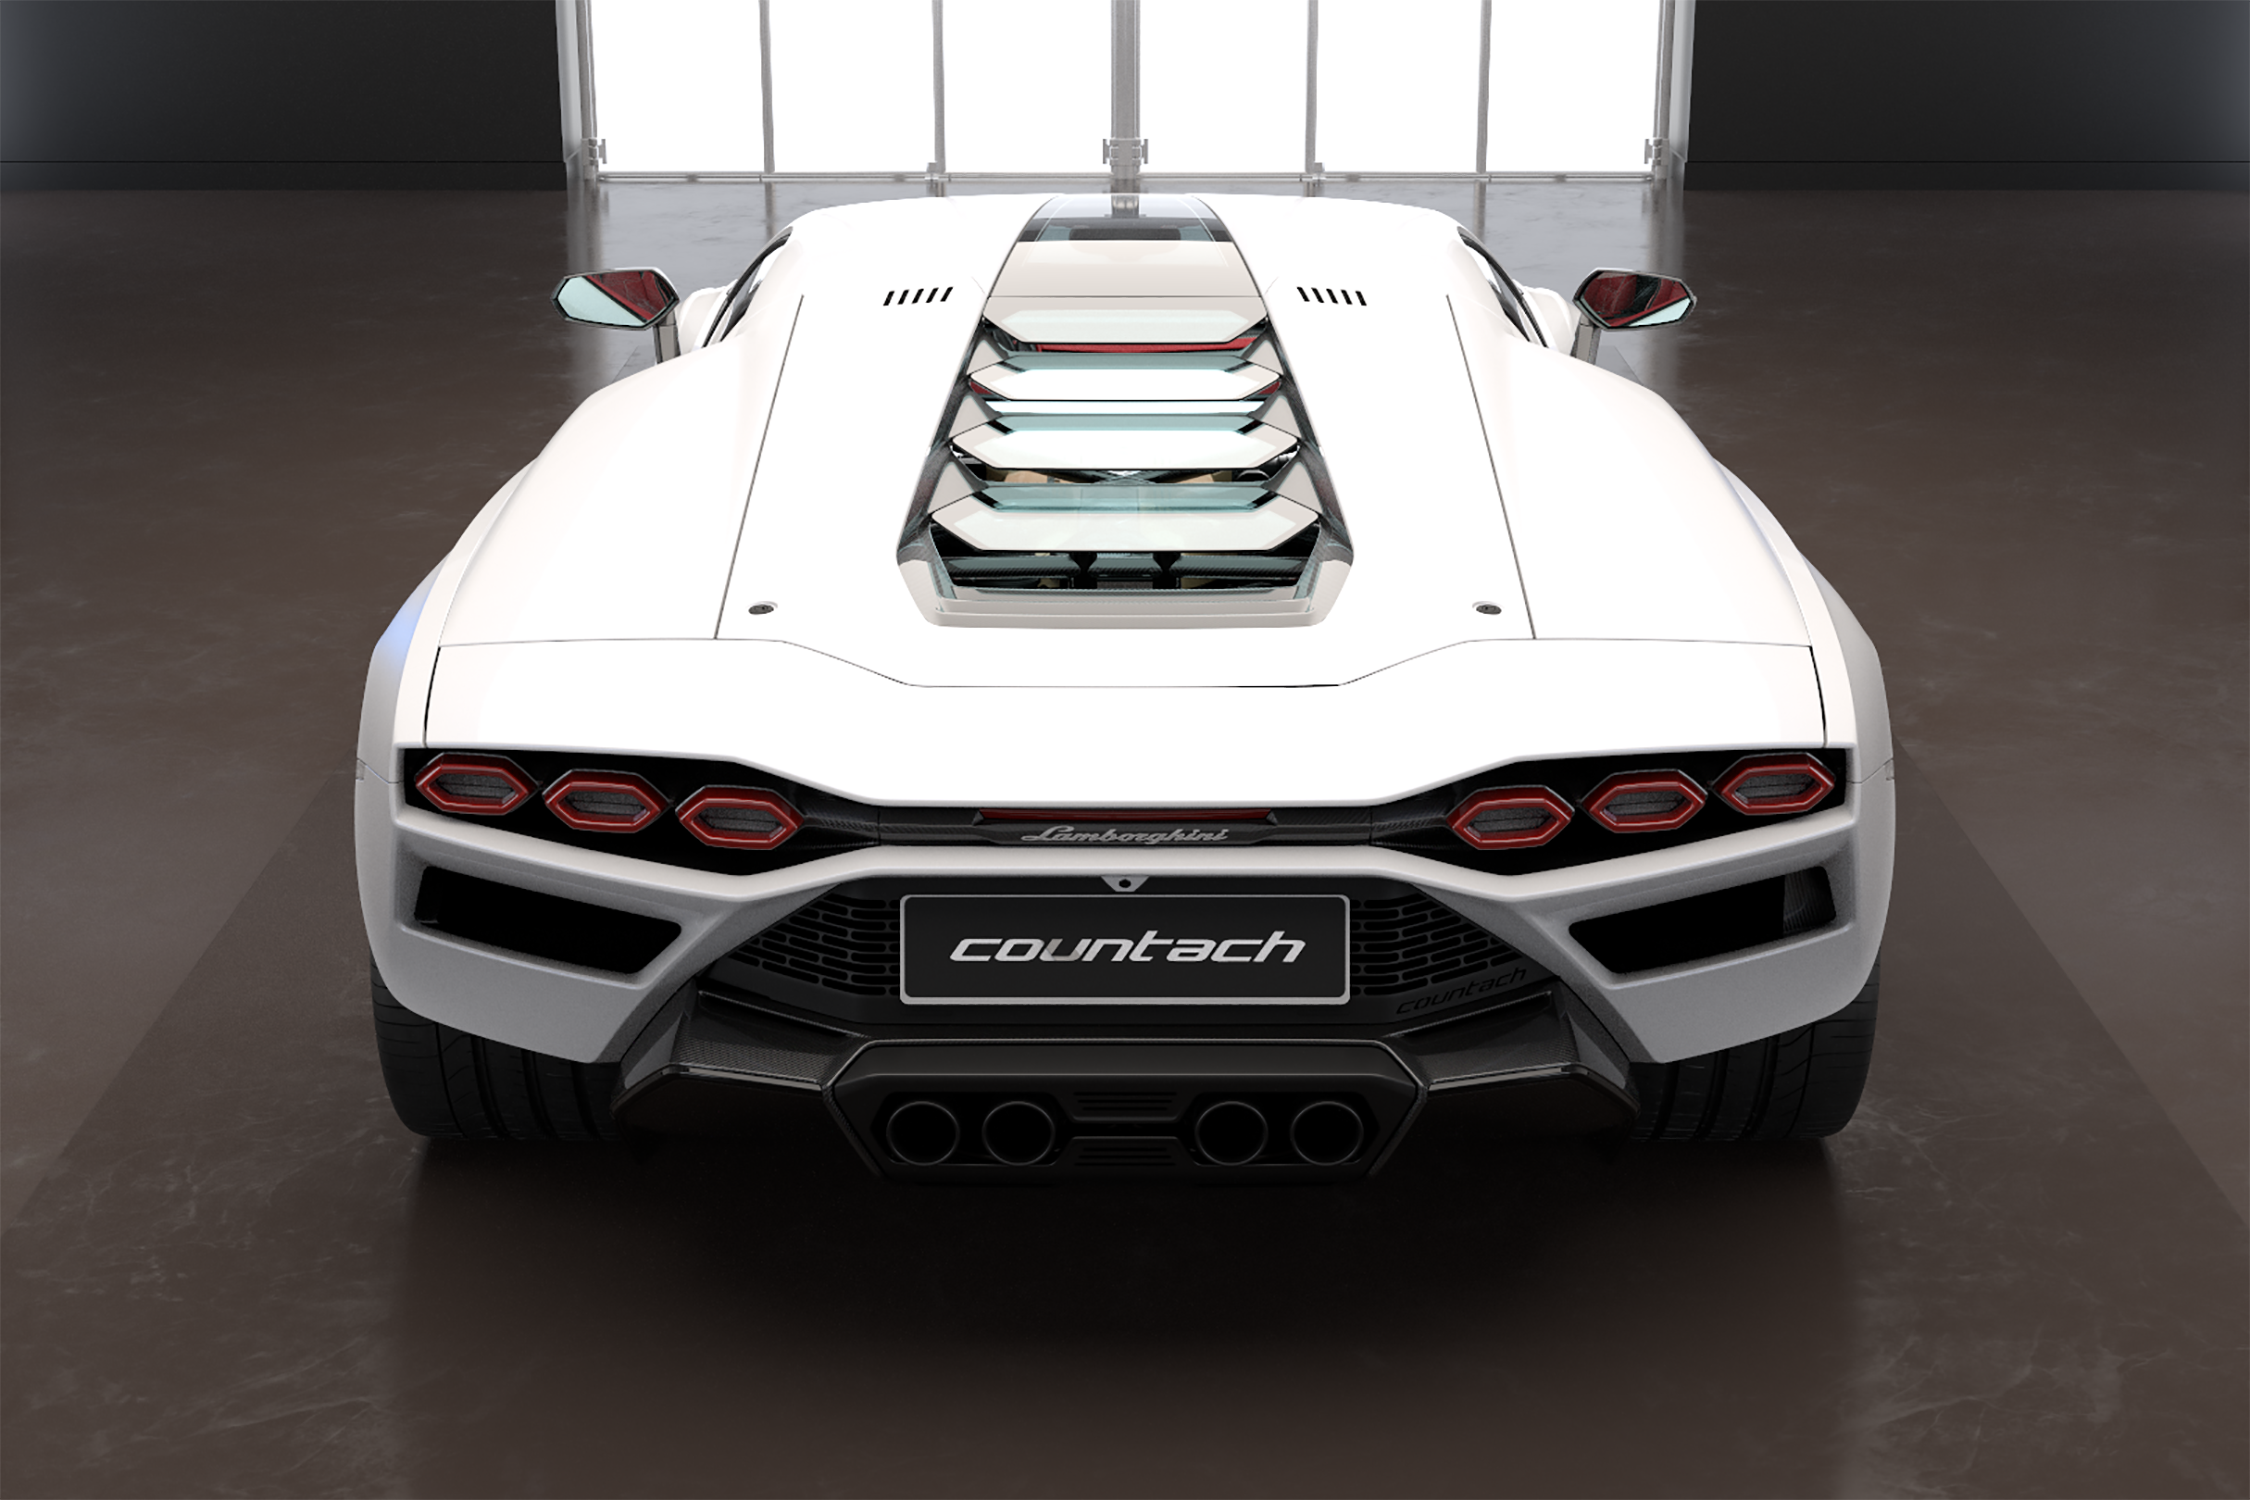 Lamborghini rappel "toutes" les nouvelles Countach !! Countach-lpi800-4-rear-studio-1628863205